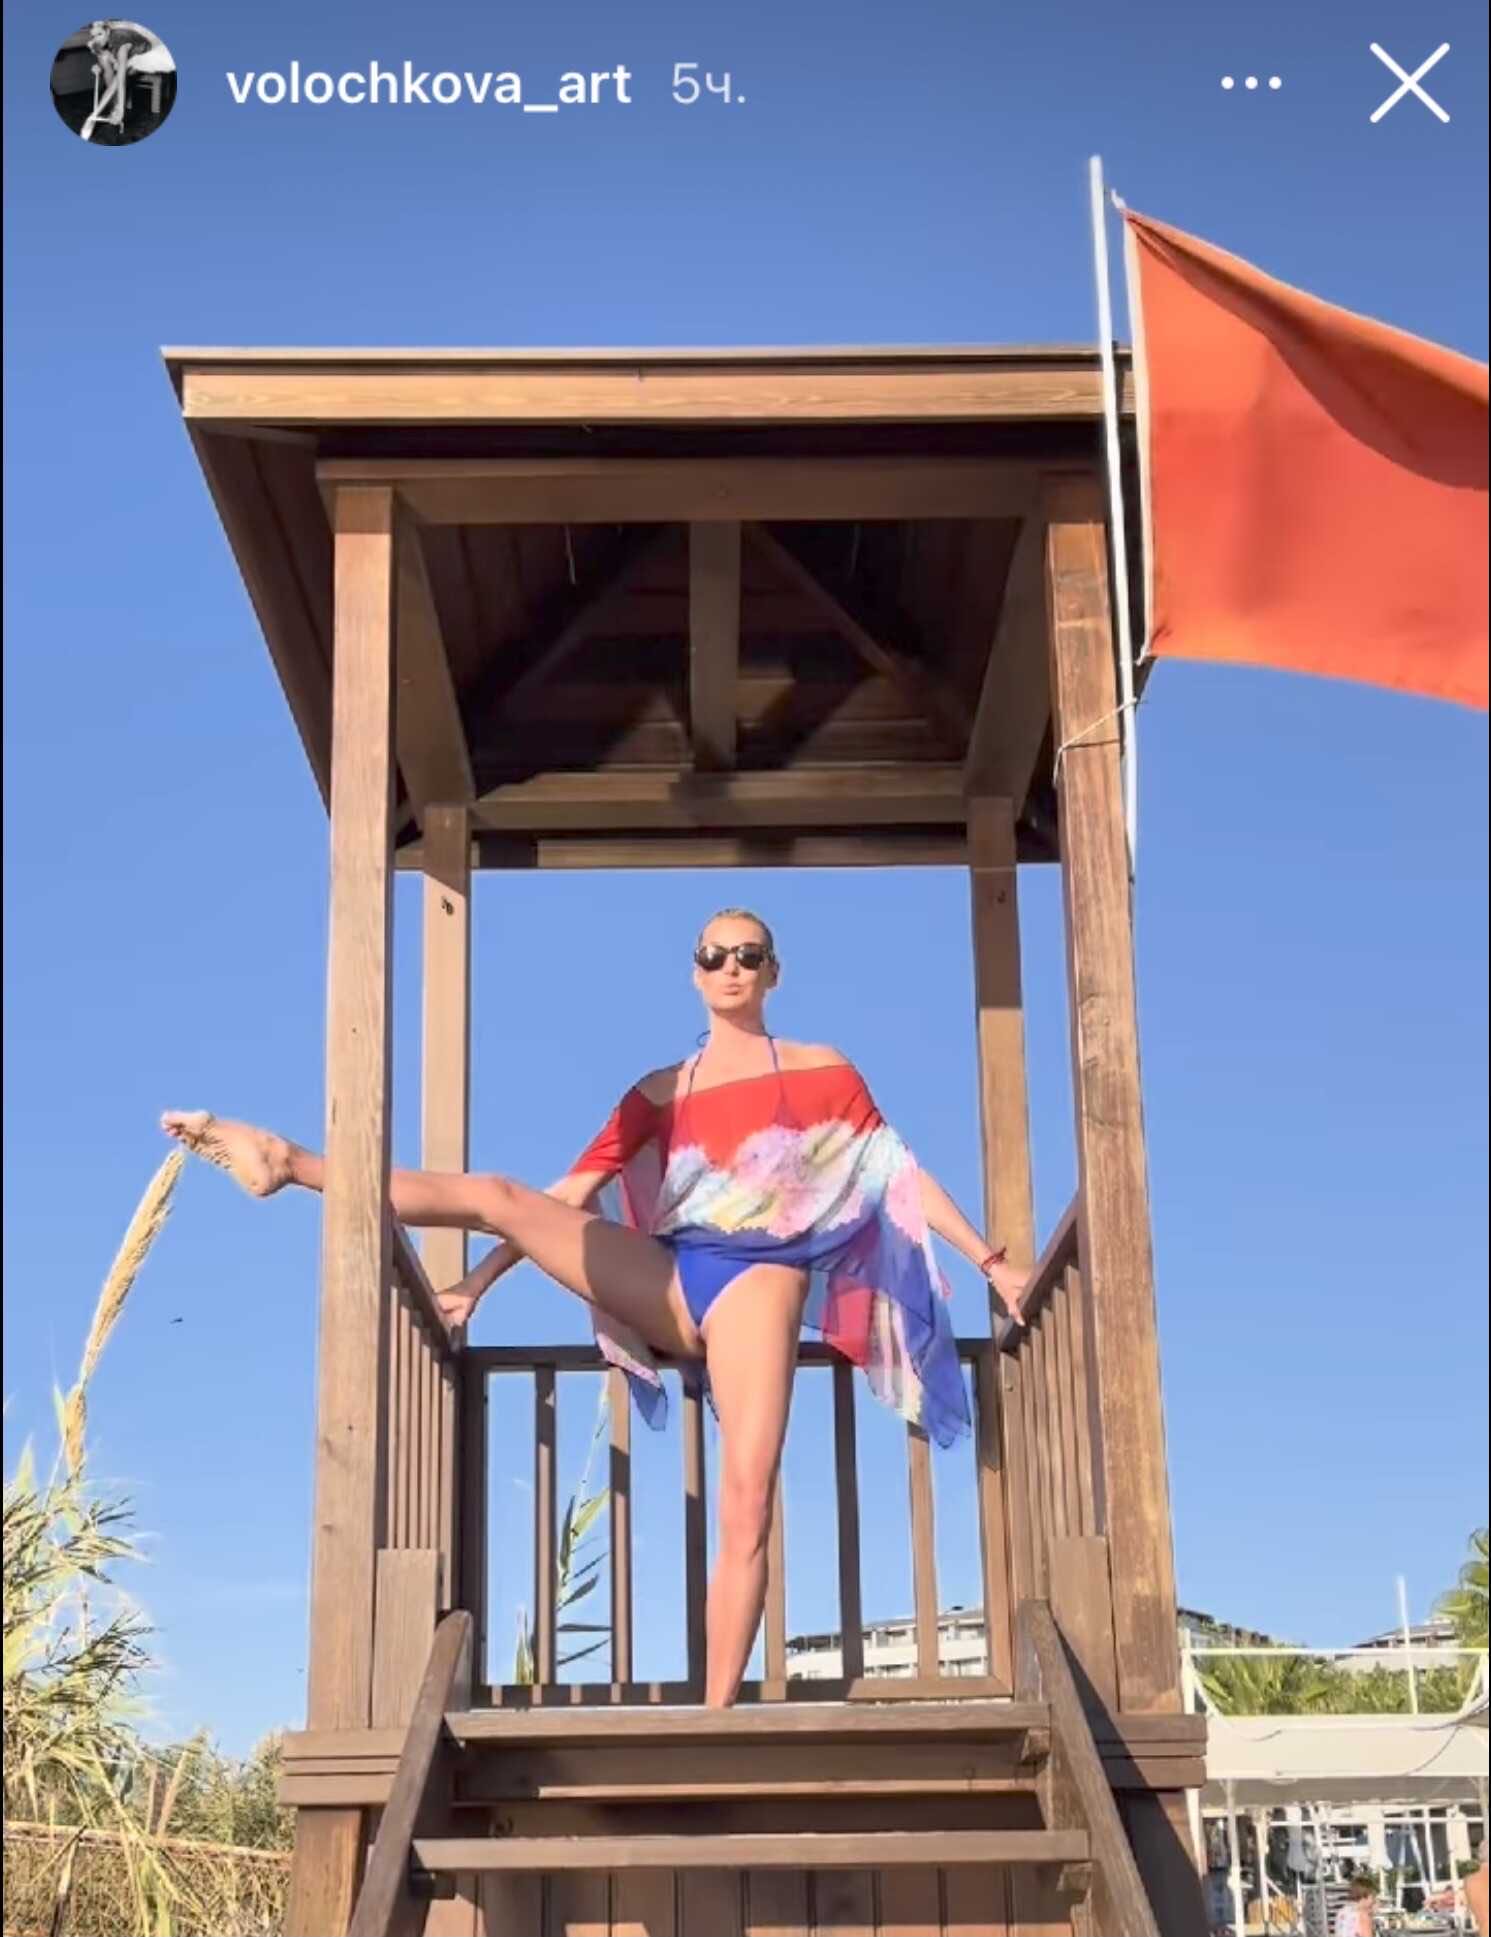 Как следует поддав просекко с утра, Анастасия Волочкова высказалась о видео, на котором ей помогают сесть на шпагат и показала дряблую кожу интимного места